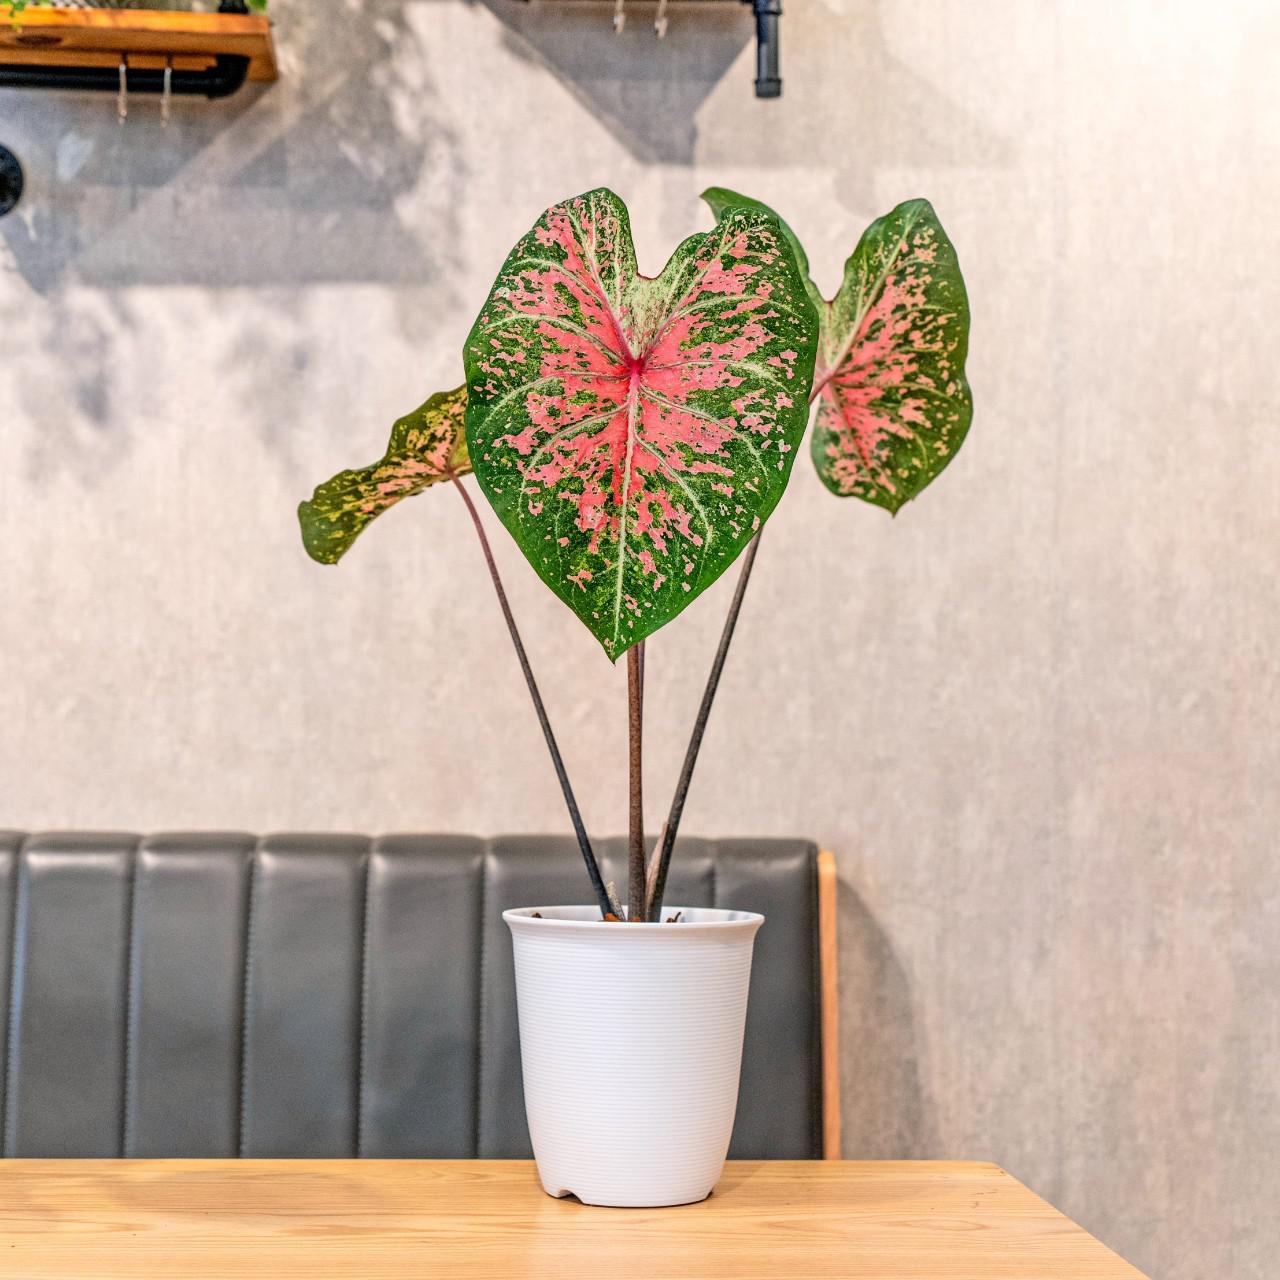 彩葉芋 日式塑陶盆 室內植物 觀葉植物 禮物 盆栽 辦公室小物